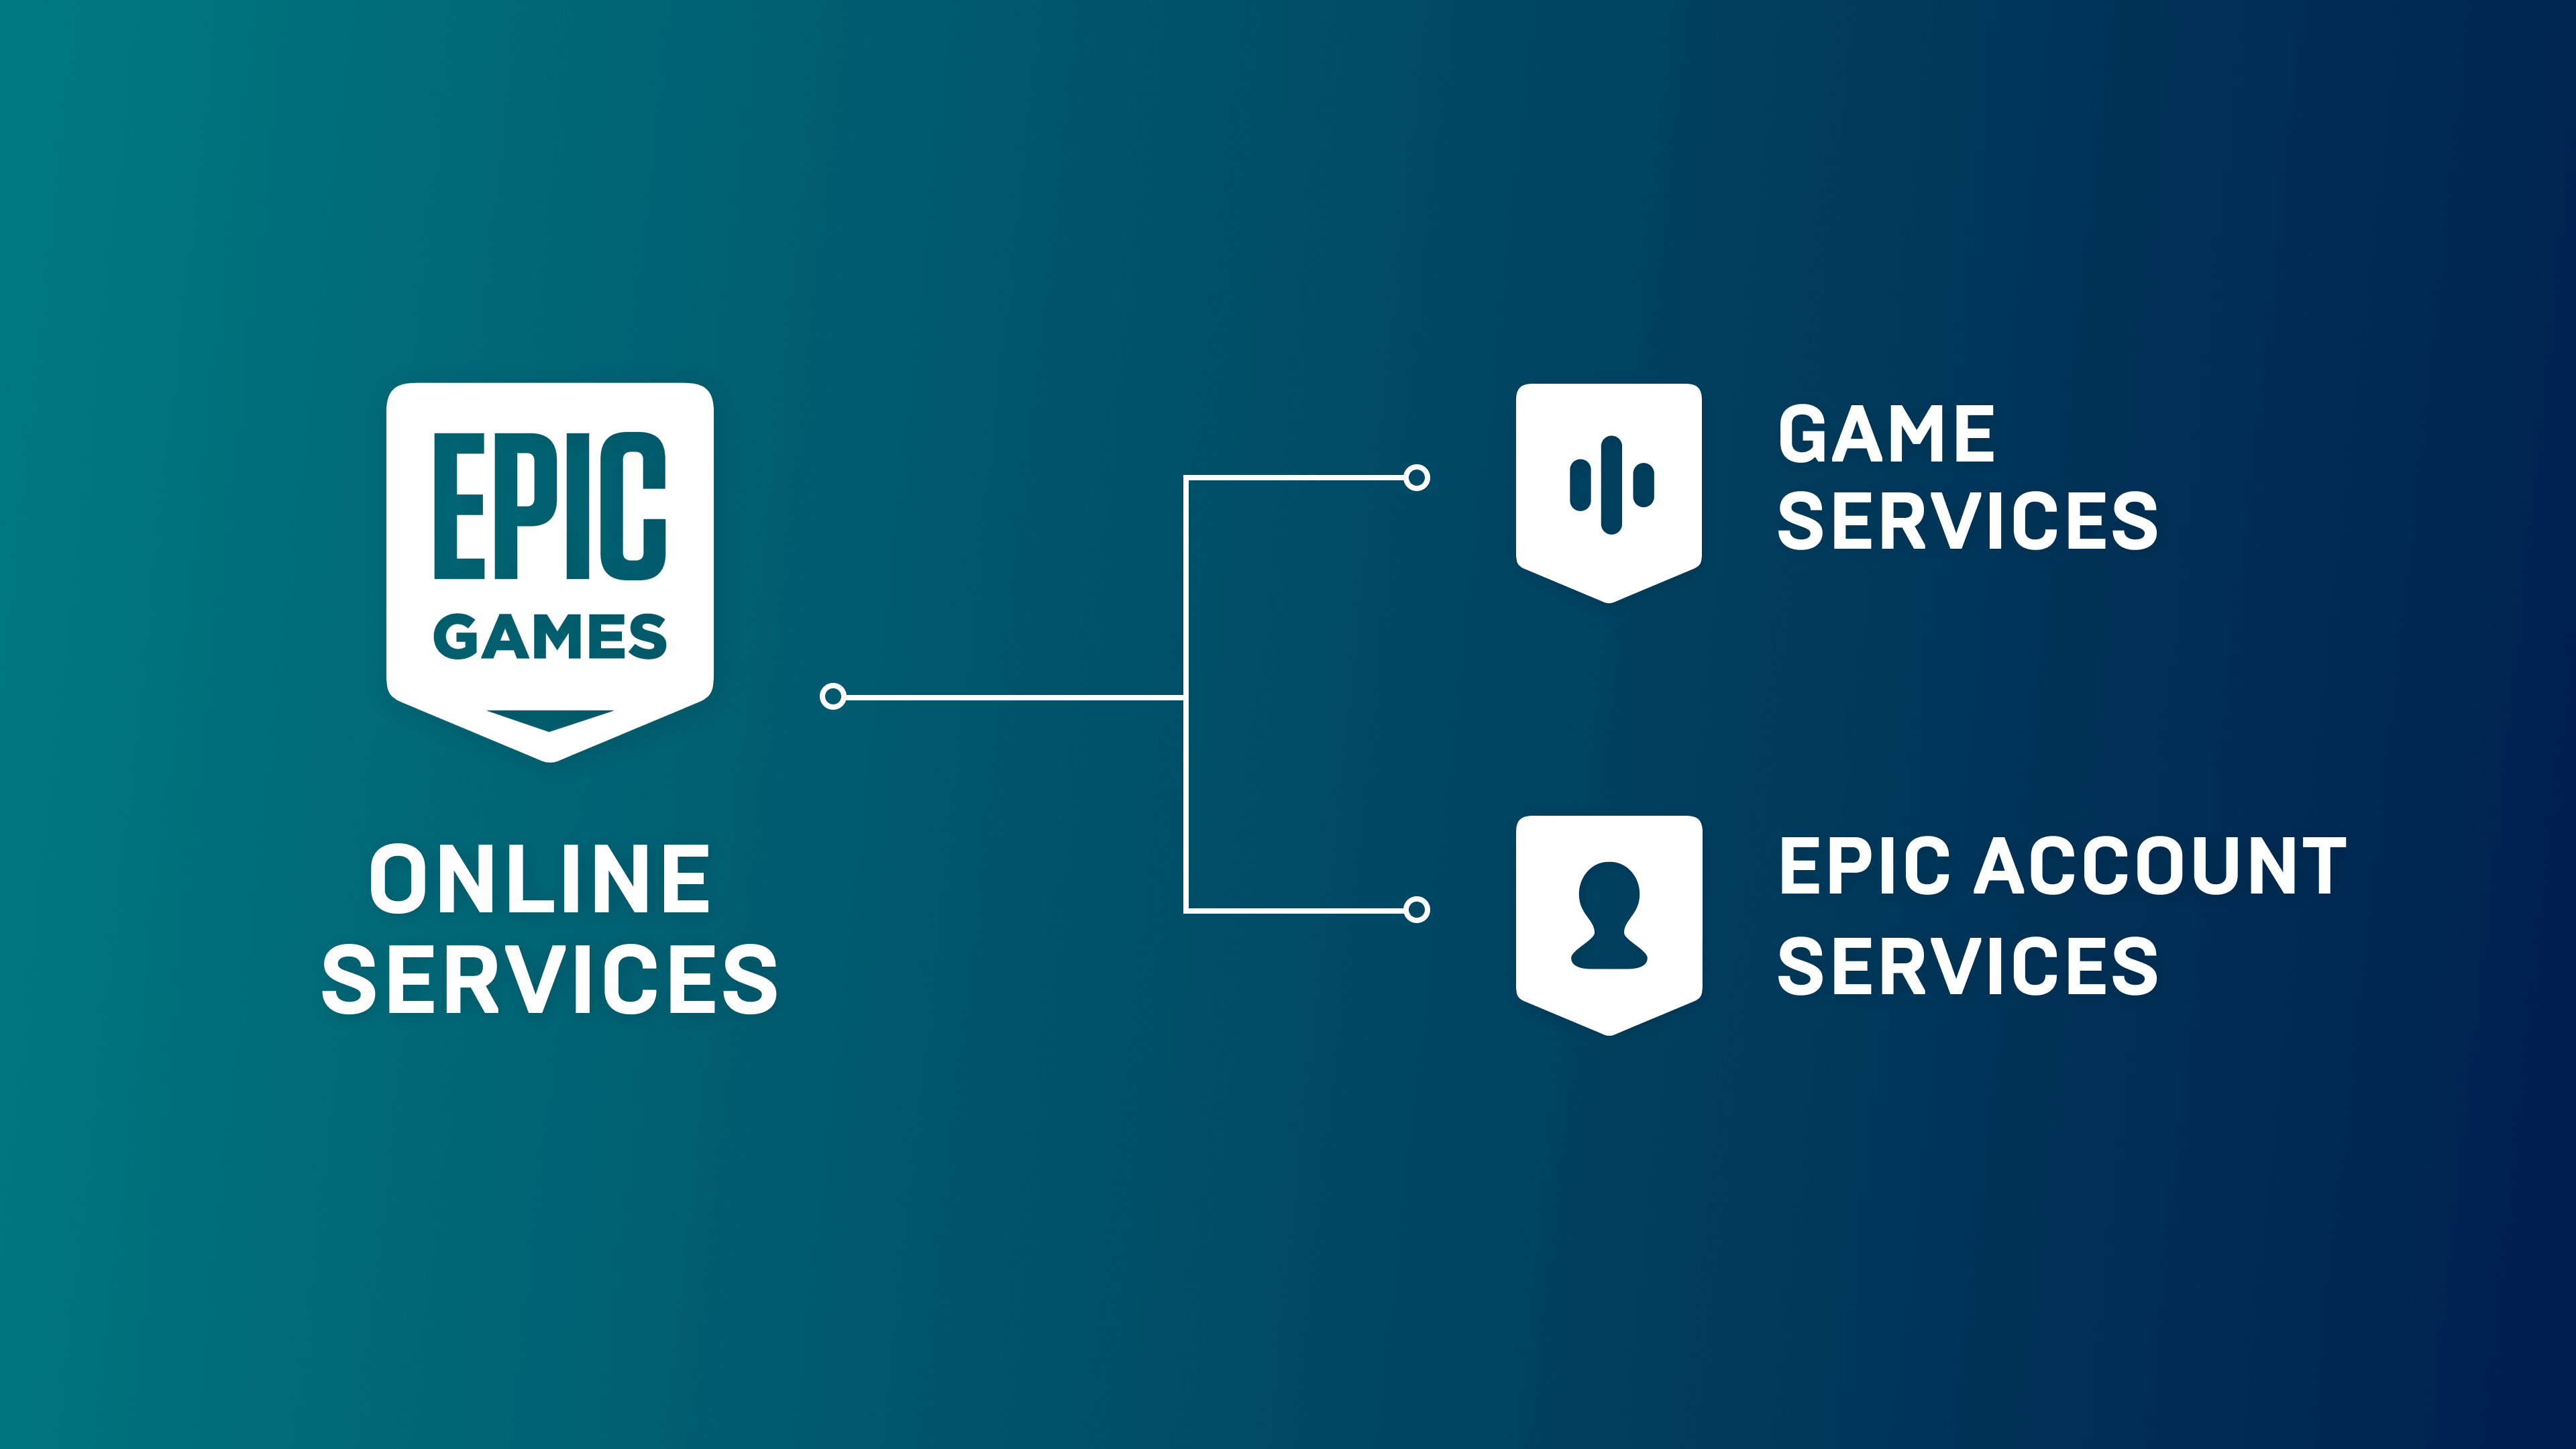 Epic Online Services